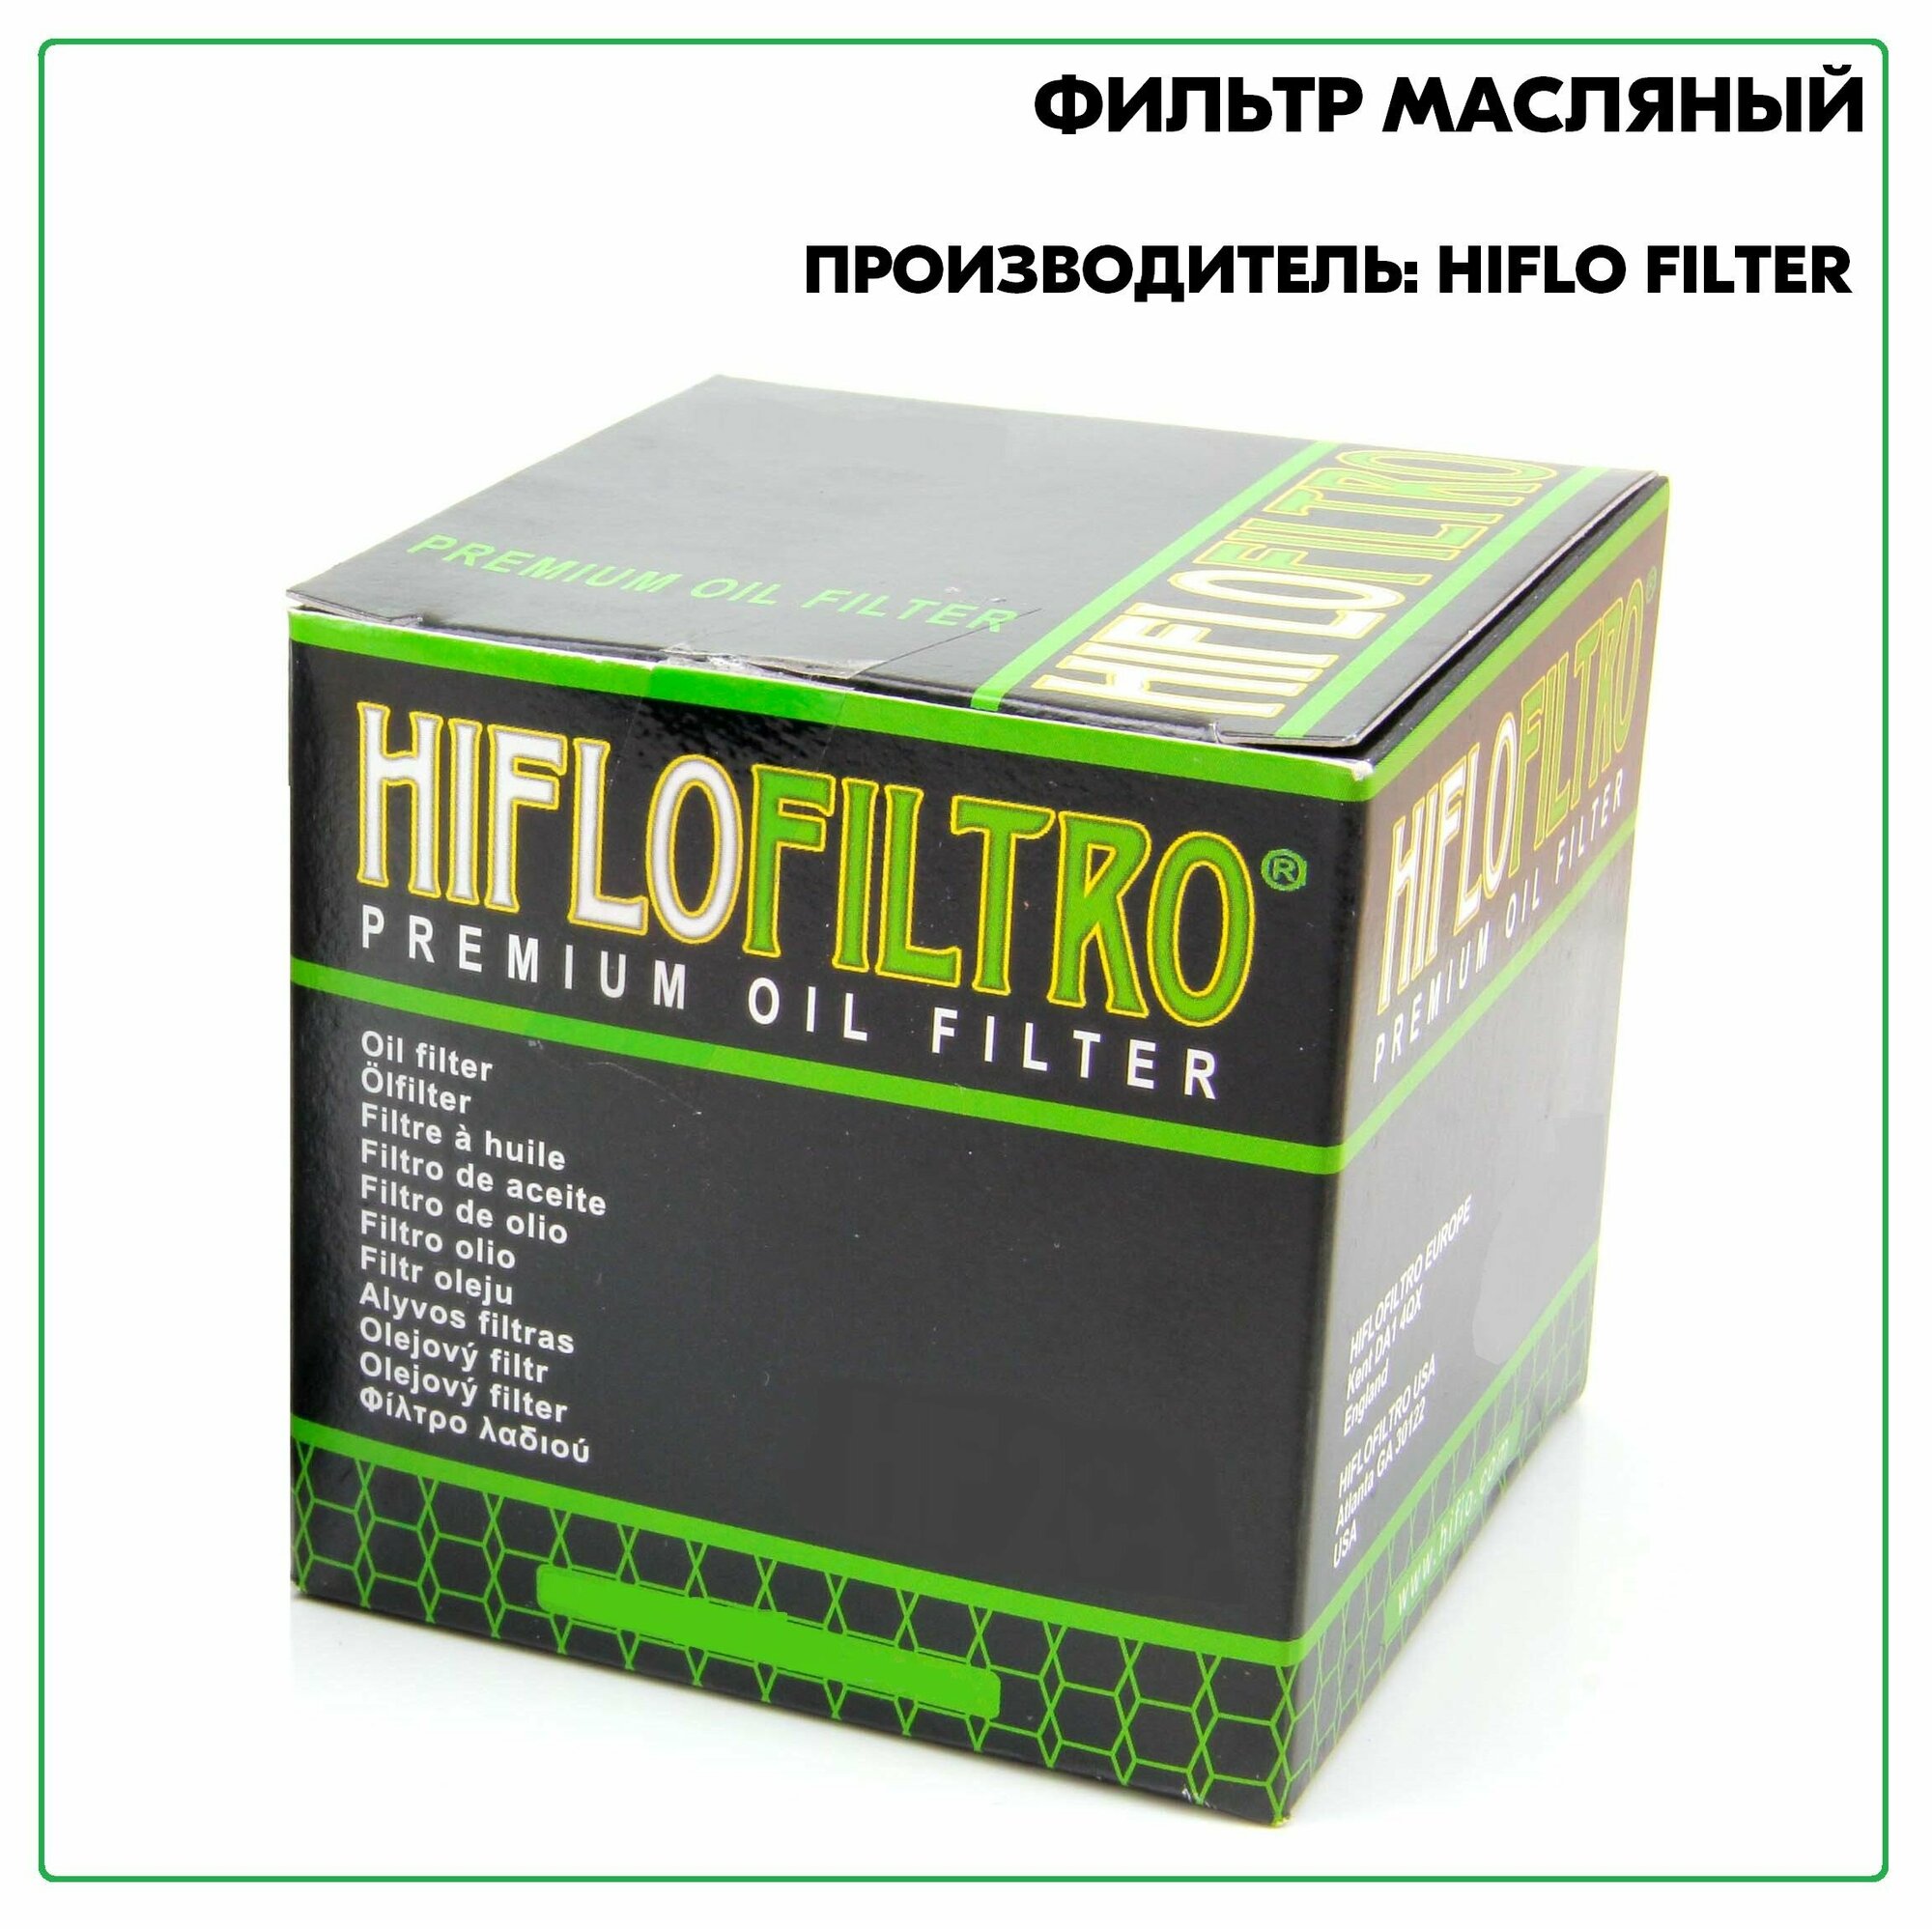 Фильтр масляный артикул HF155 производитель HIFLO FILTER